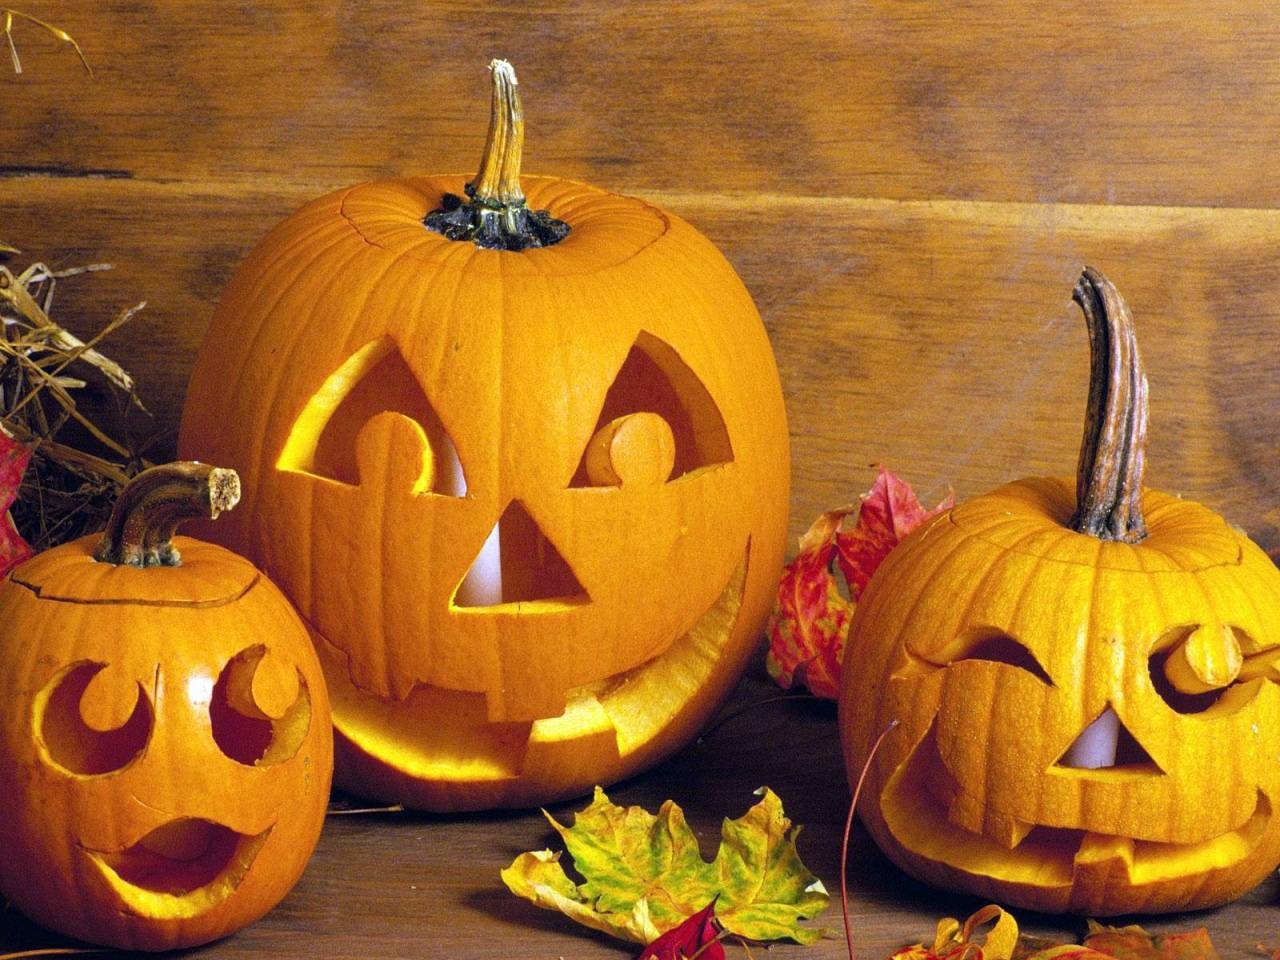 Скачать картинку Хэллоуин (Halloween), Праздники в телефон бесплатно.